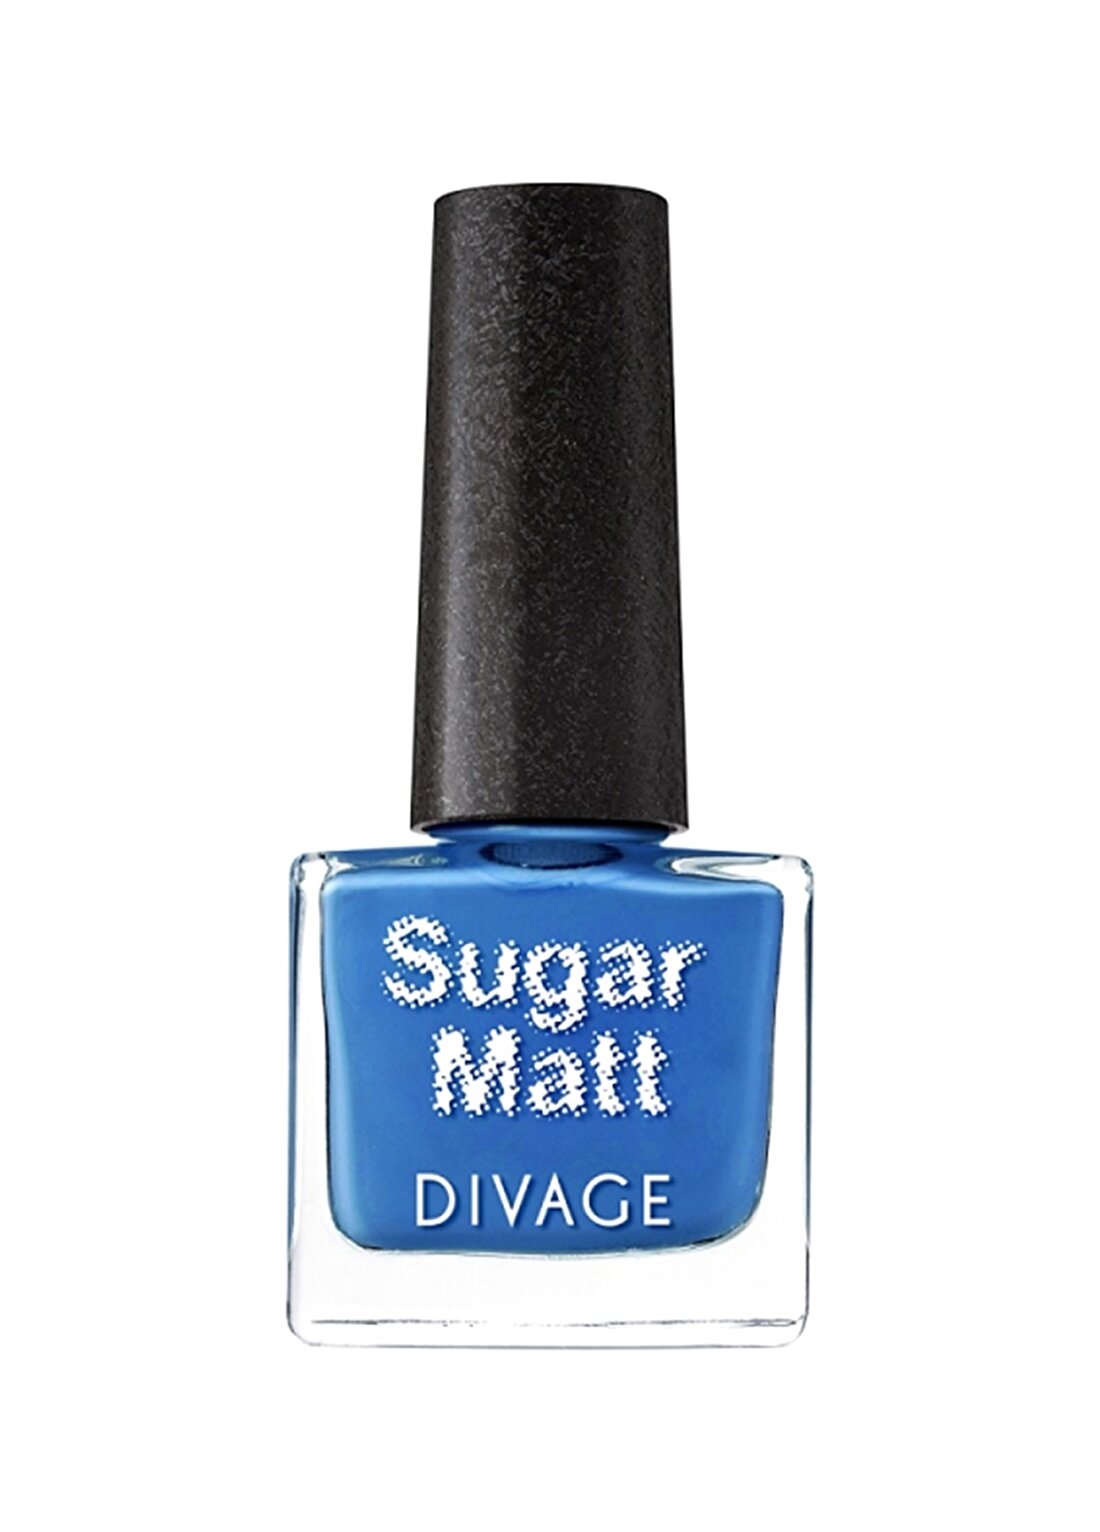 Divage With A Mat Sand Effect Sugar Matt No07 Oje